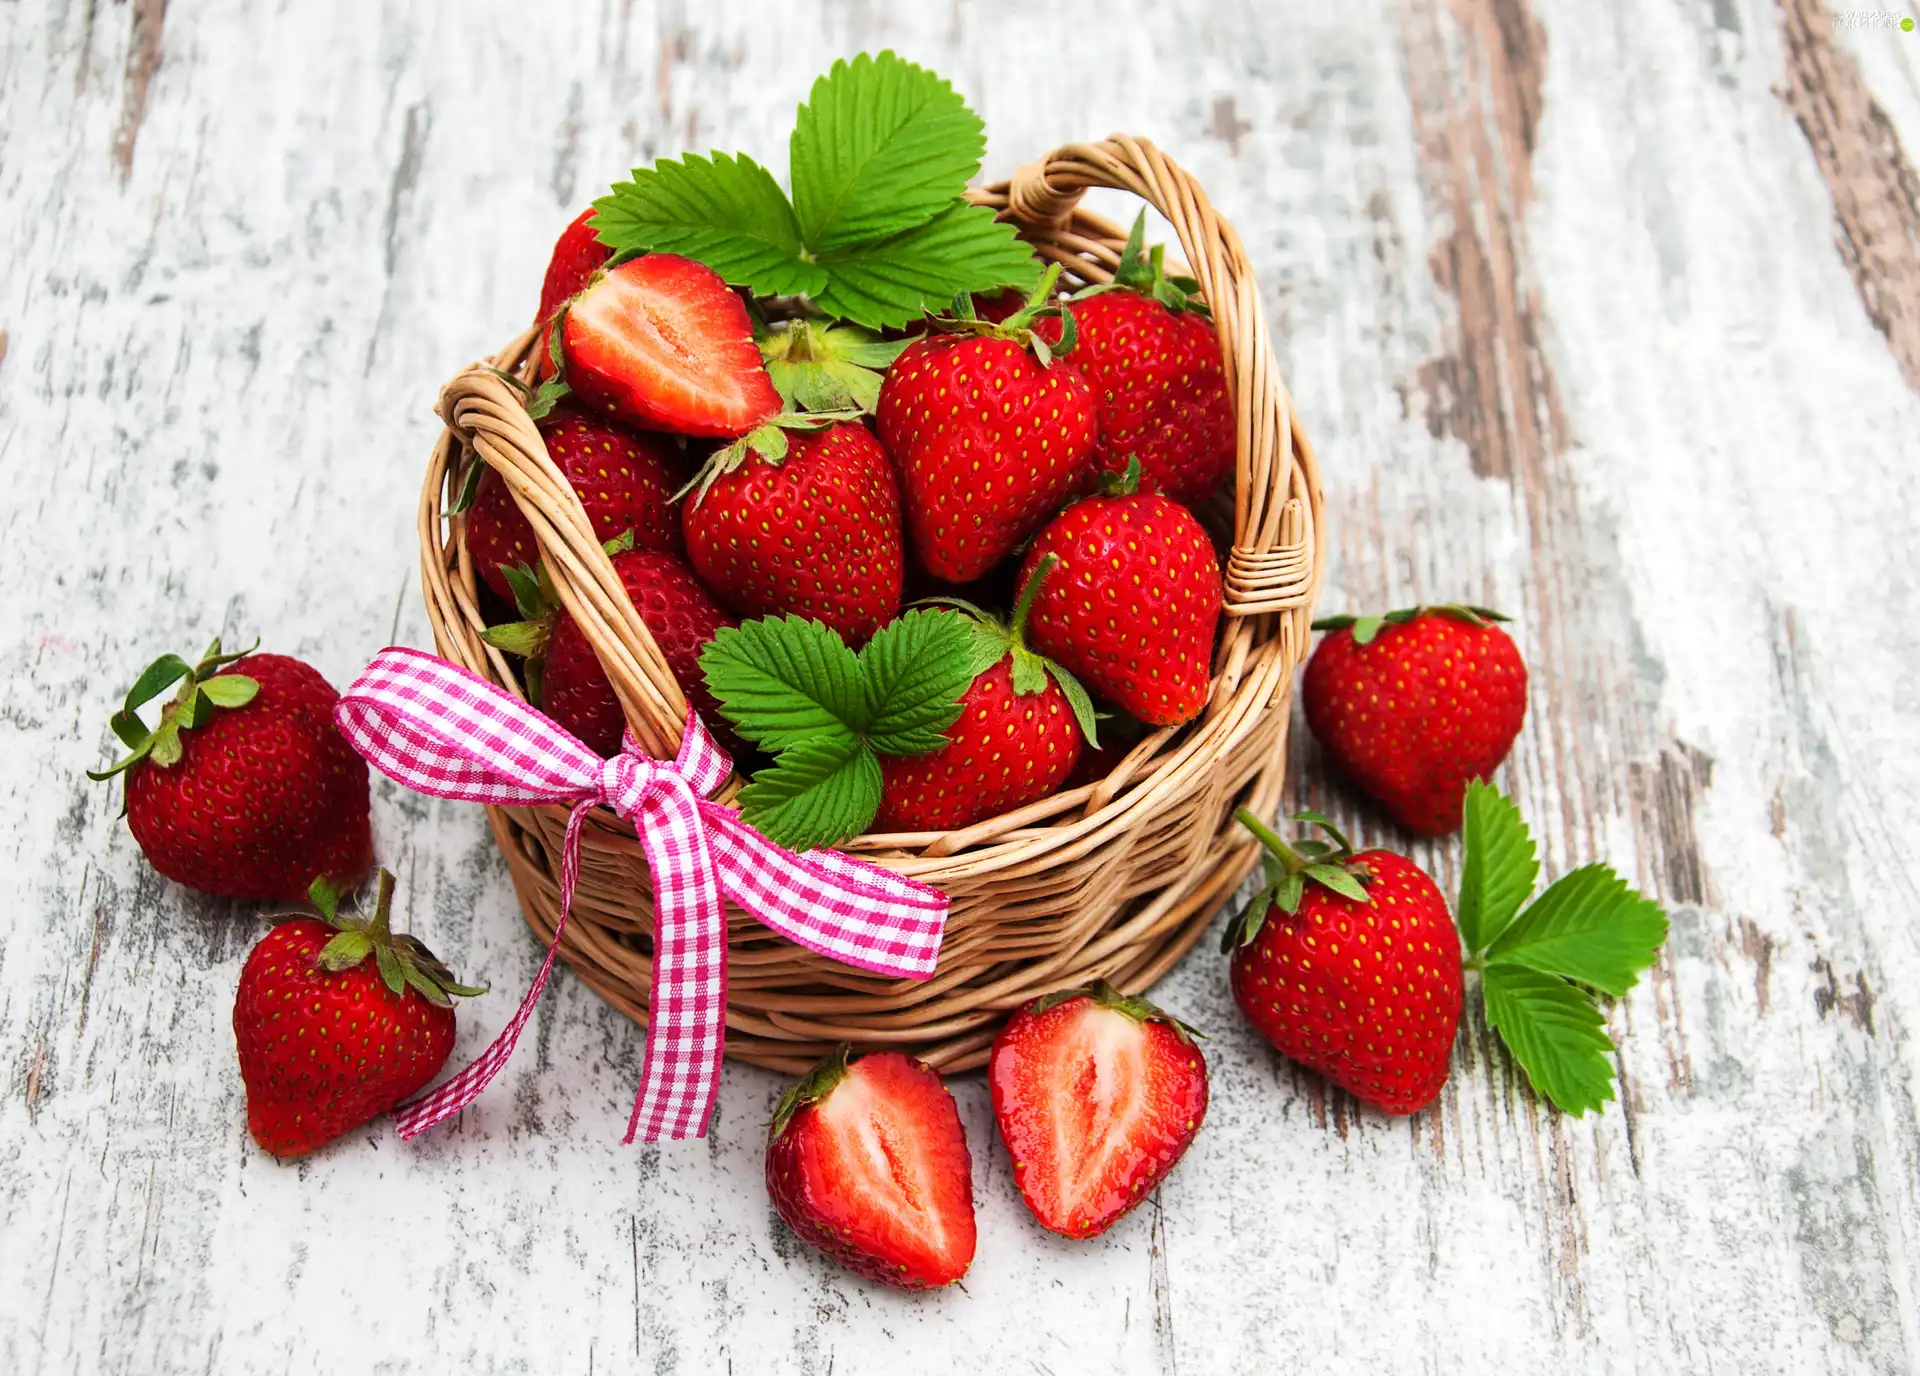 Leaf, board, basket, bow, strawberries